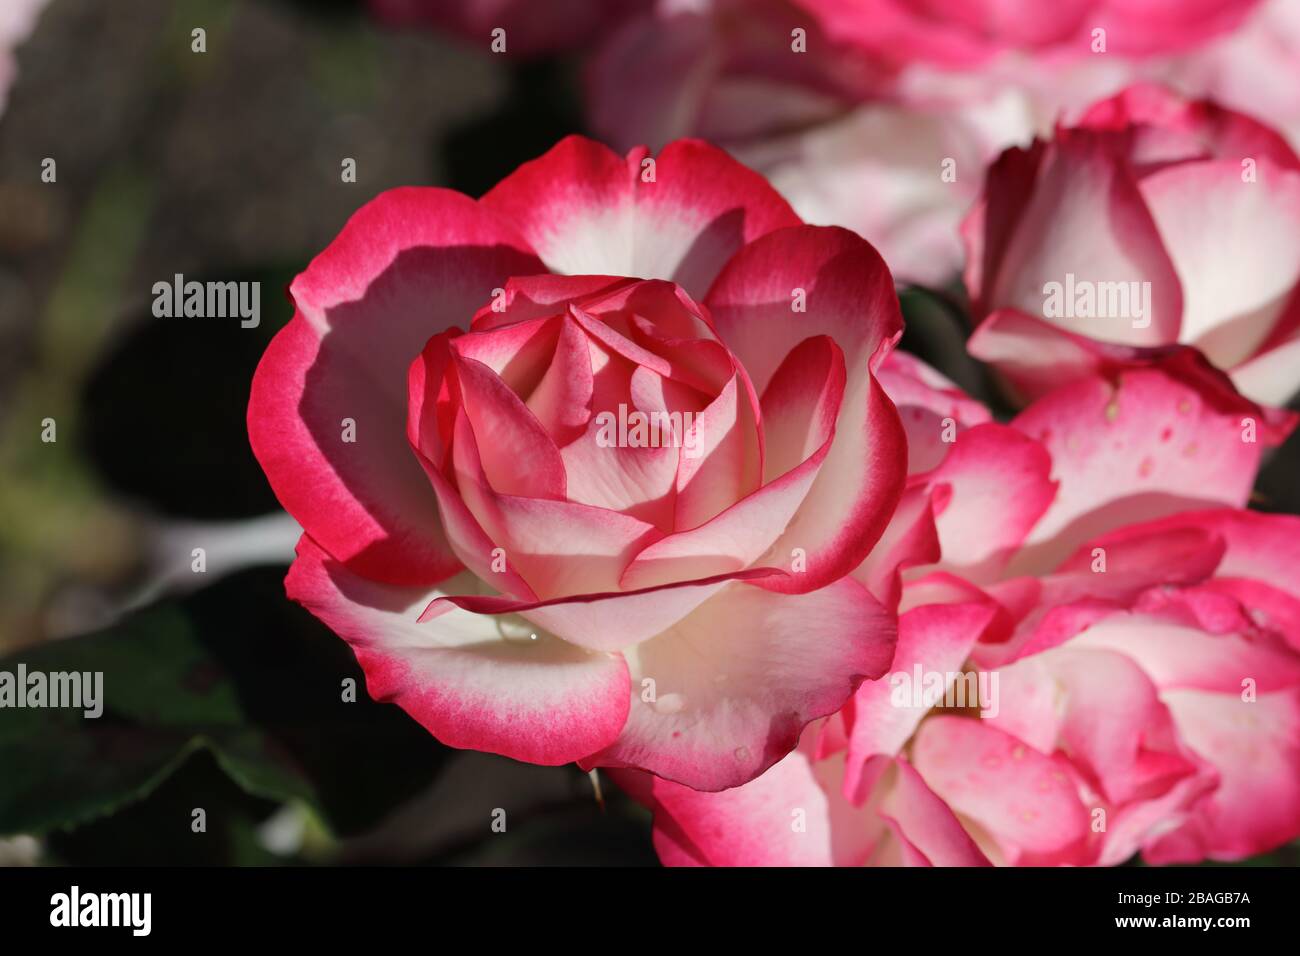 Il ghiaccio di lampone è molto distinguibile dalla colorazione dei suoi fiori, bianco cremoso con un attraente bordo rosa di lampone. Foto Stock